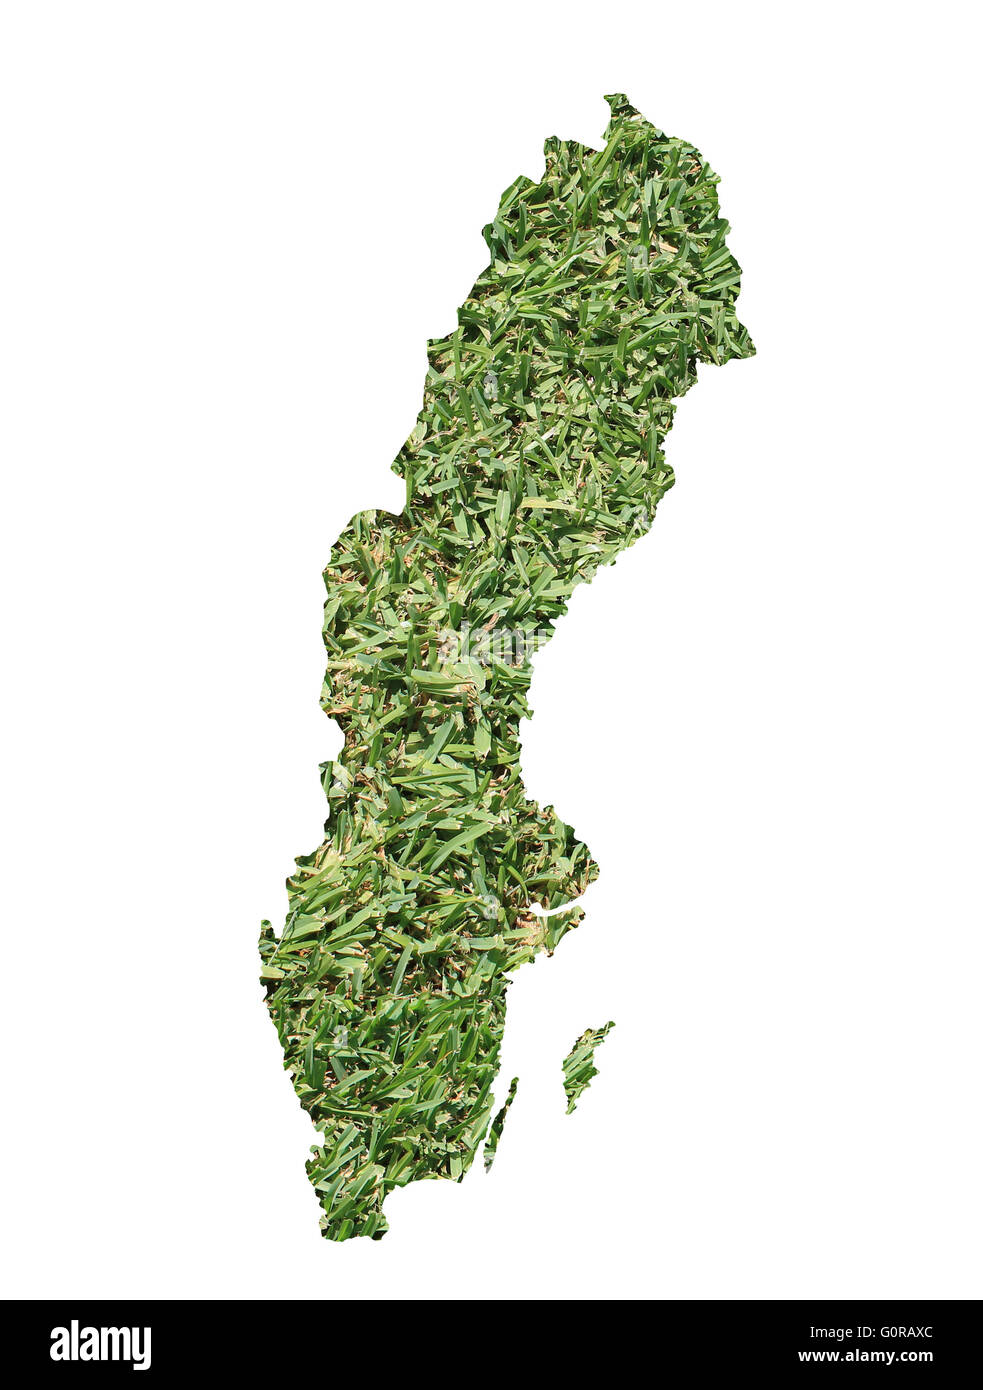 Landkarte von Schweden gefüllt mit grünen Rasen, Umwelt und Ökologie-Konzept. Stockfoto